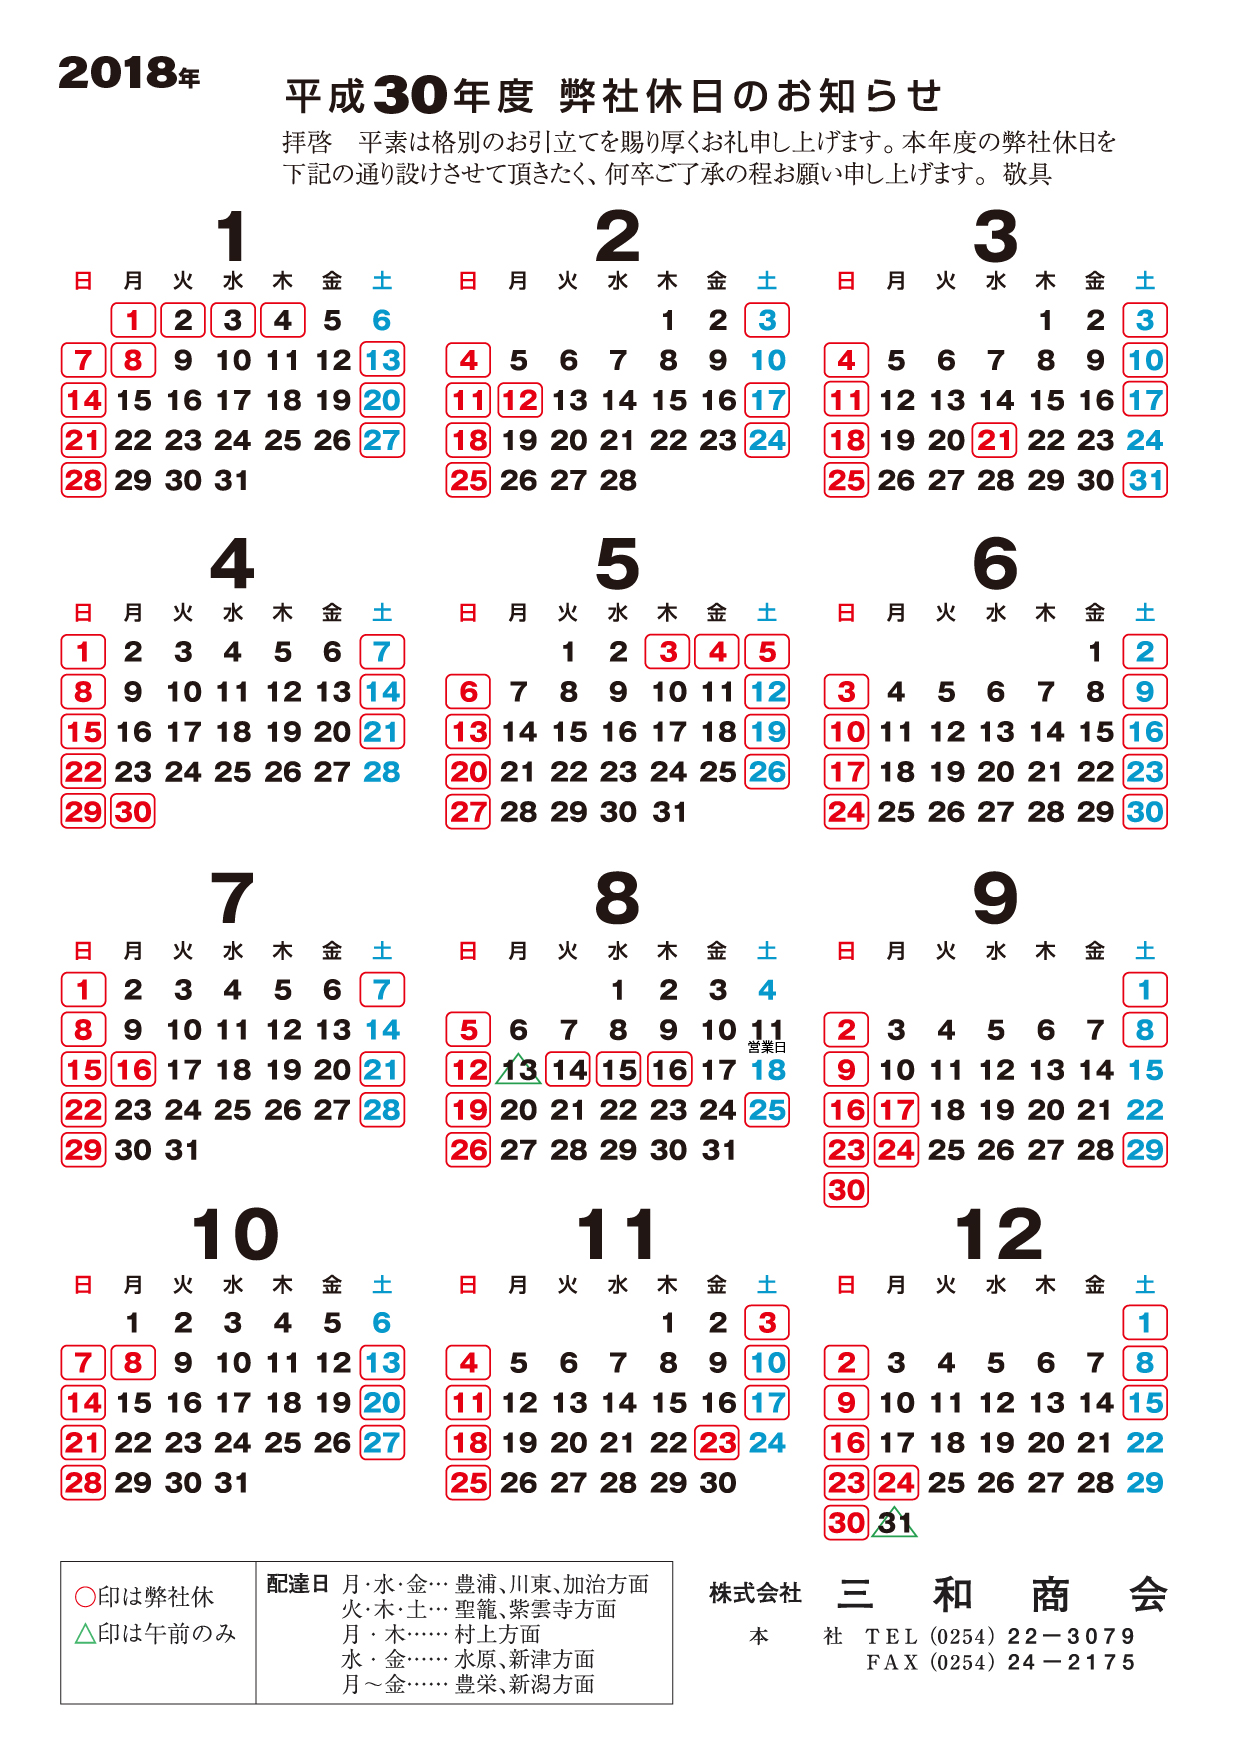 2018年営業カレンダー sanwashokai.jp 株式会社三和商会 総合包装資材